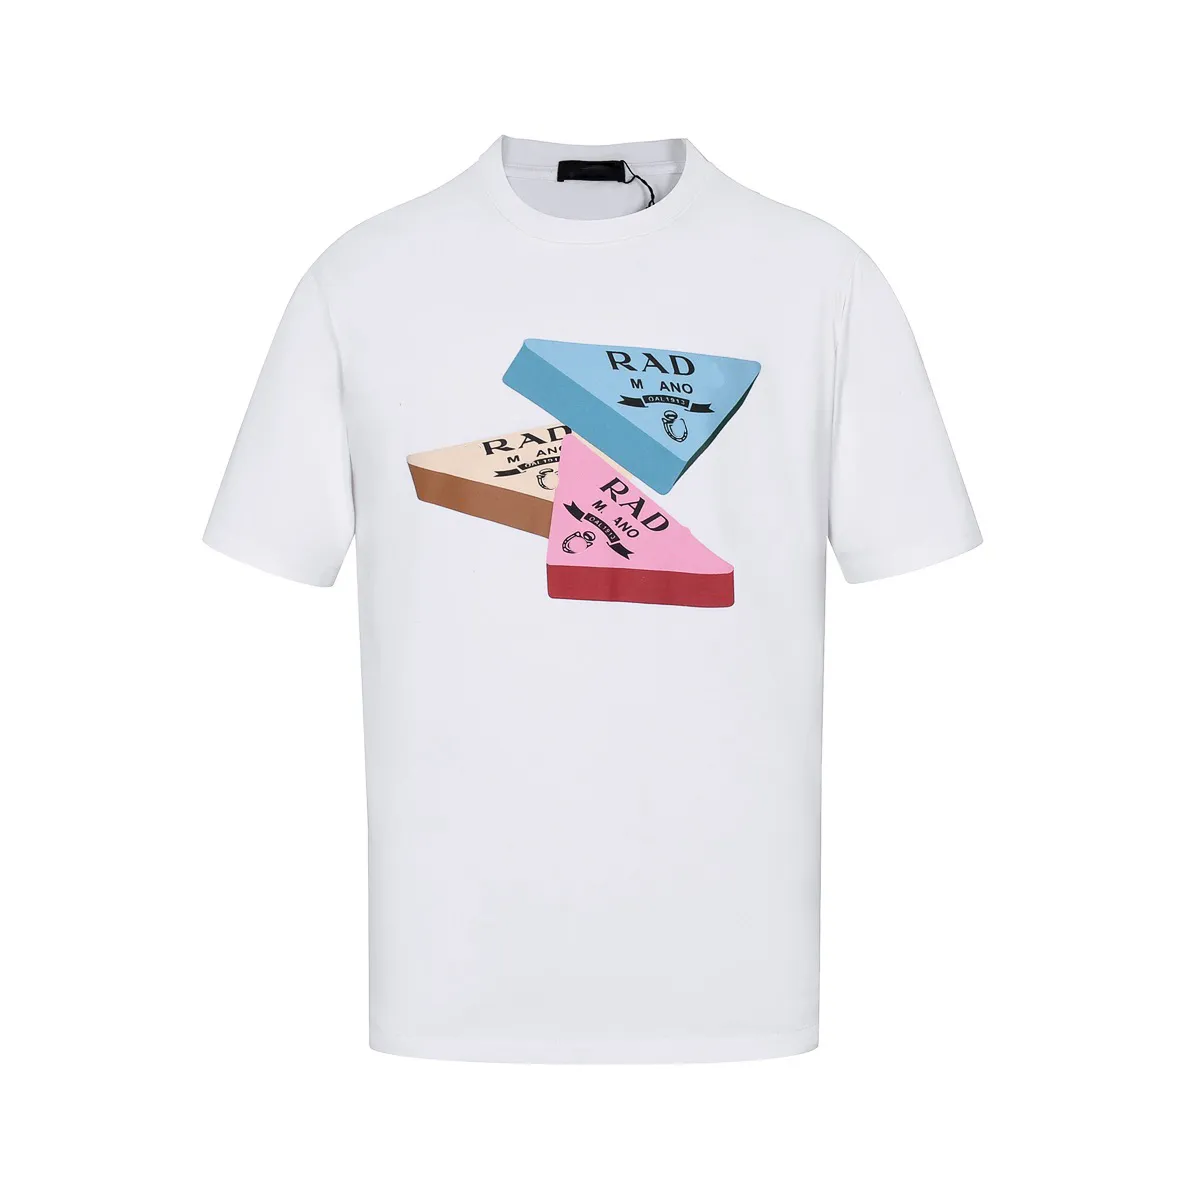 Модная футболка с короткими рукавами sp5der, футболки hellstar с круглым вырезом, 100% хлопок, дизайнерская модная повседневная футболка, футболка с аниме-игрой